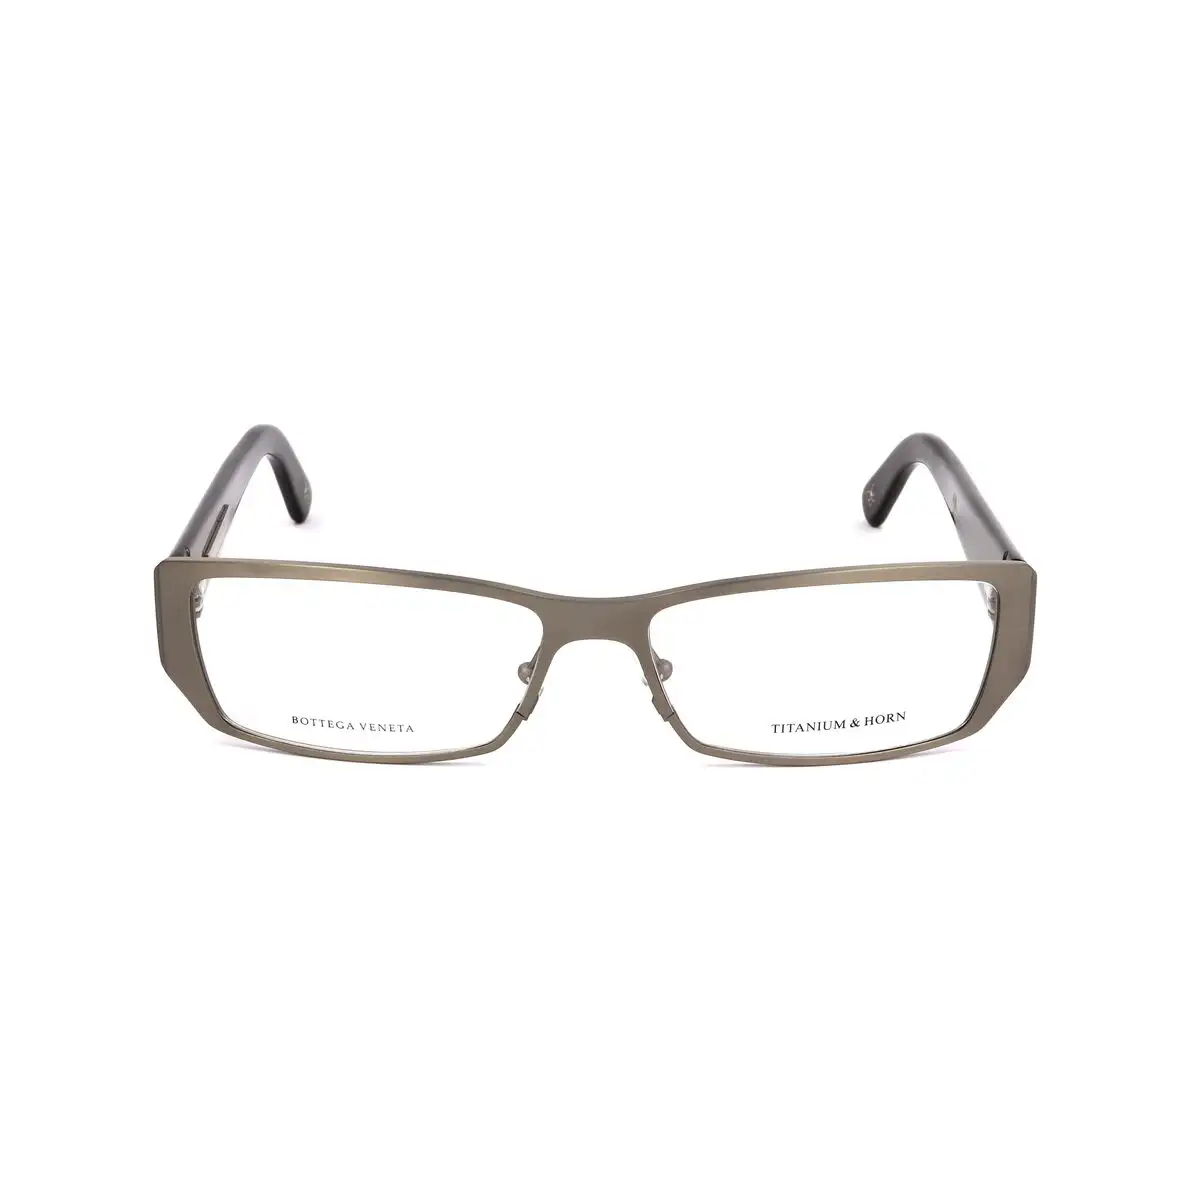 Monture de lunettes femme bottega veneta bv 83 20 argente_2512. DIAYTAR SENEGAL - L'Art de Choisir, l'Art de Se Distinquer. Naviguez à travers notre catalogue et choisissez des produits qui ajoutent une note d'élégance à votre style unique.